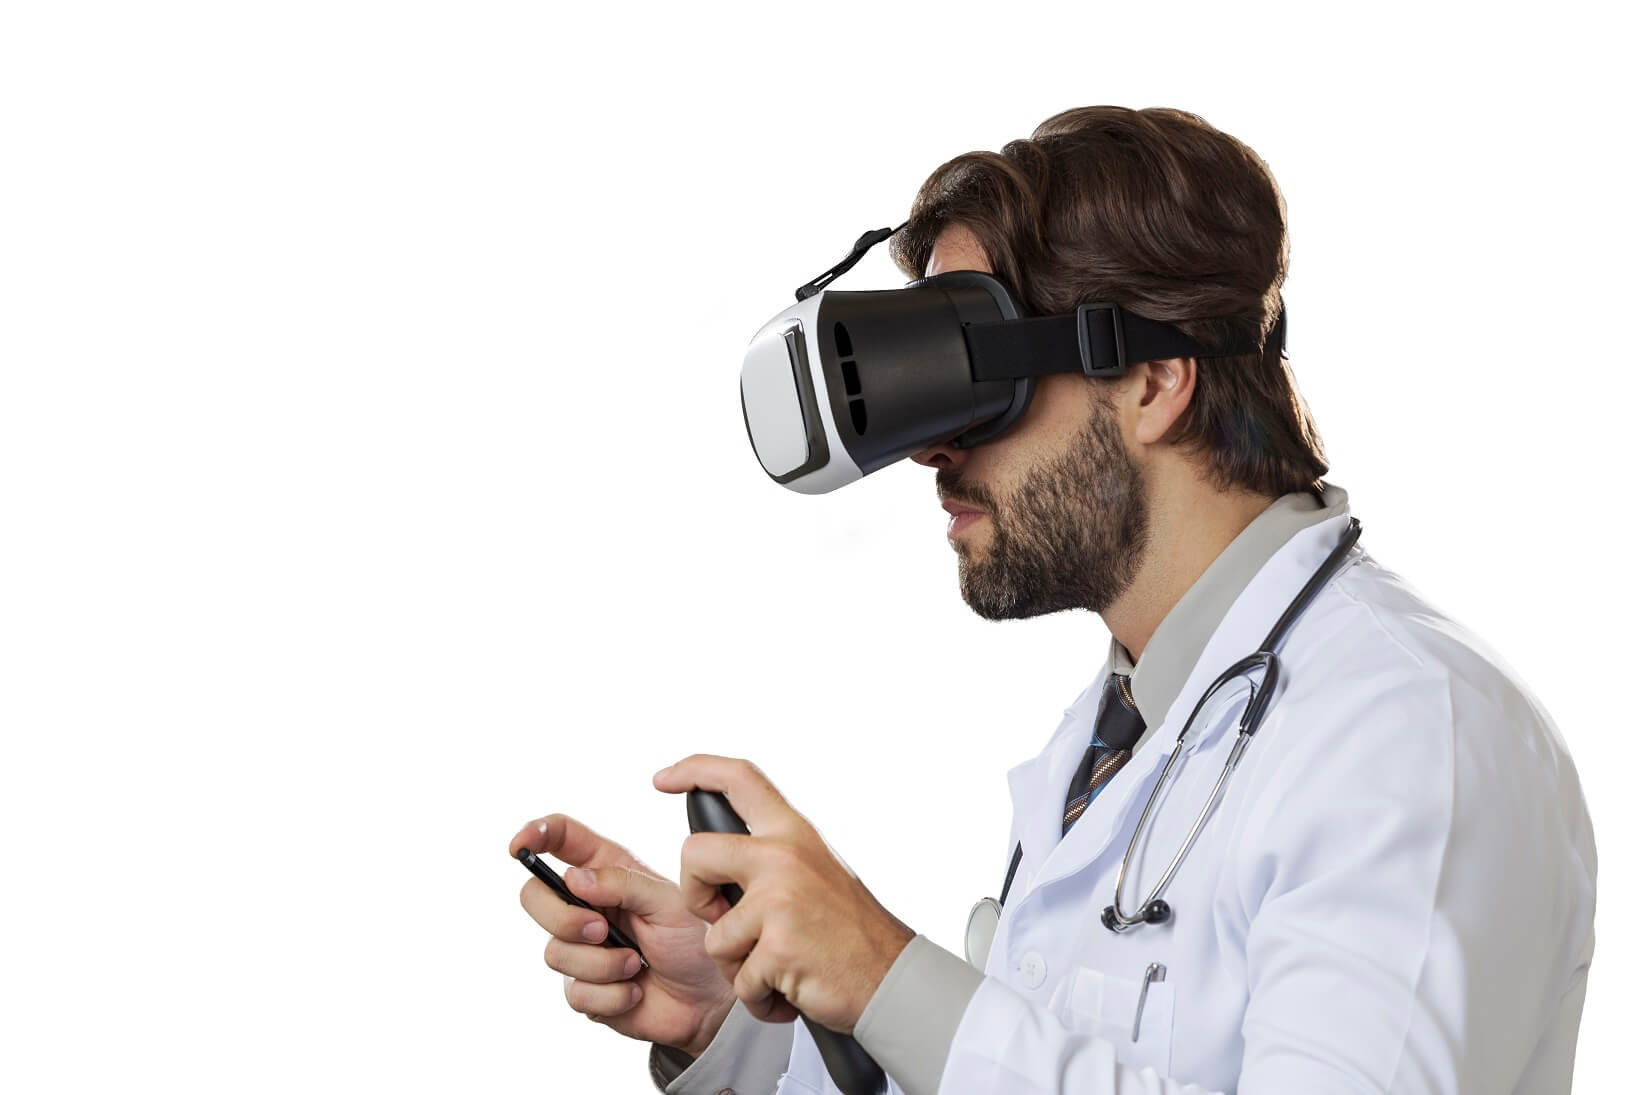 Realidade Virtual aplicada na medicina: áreas e exemplos